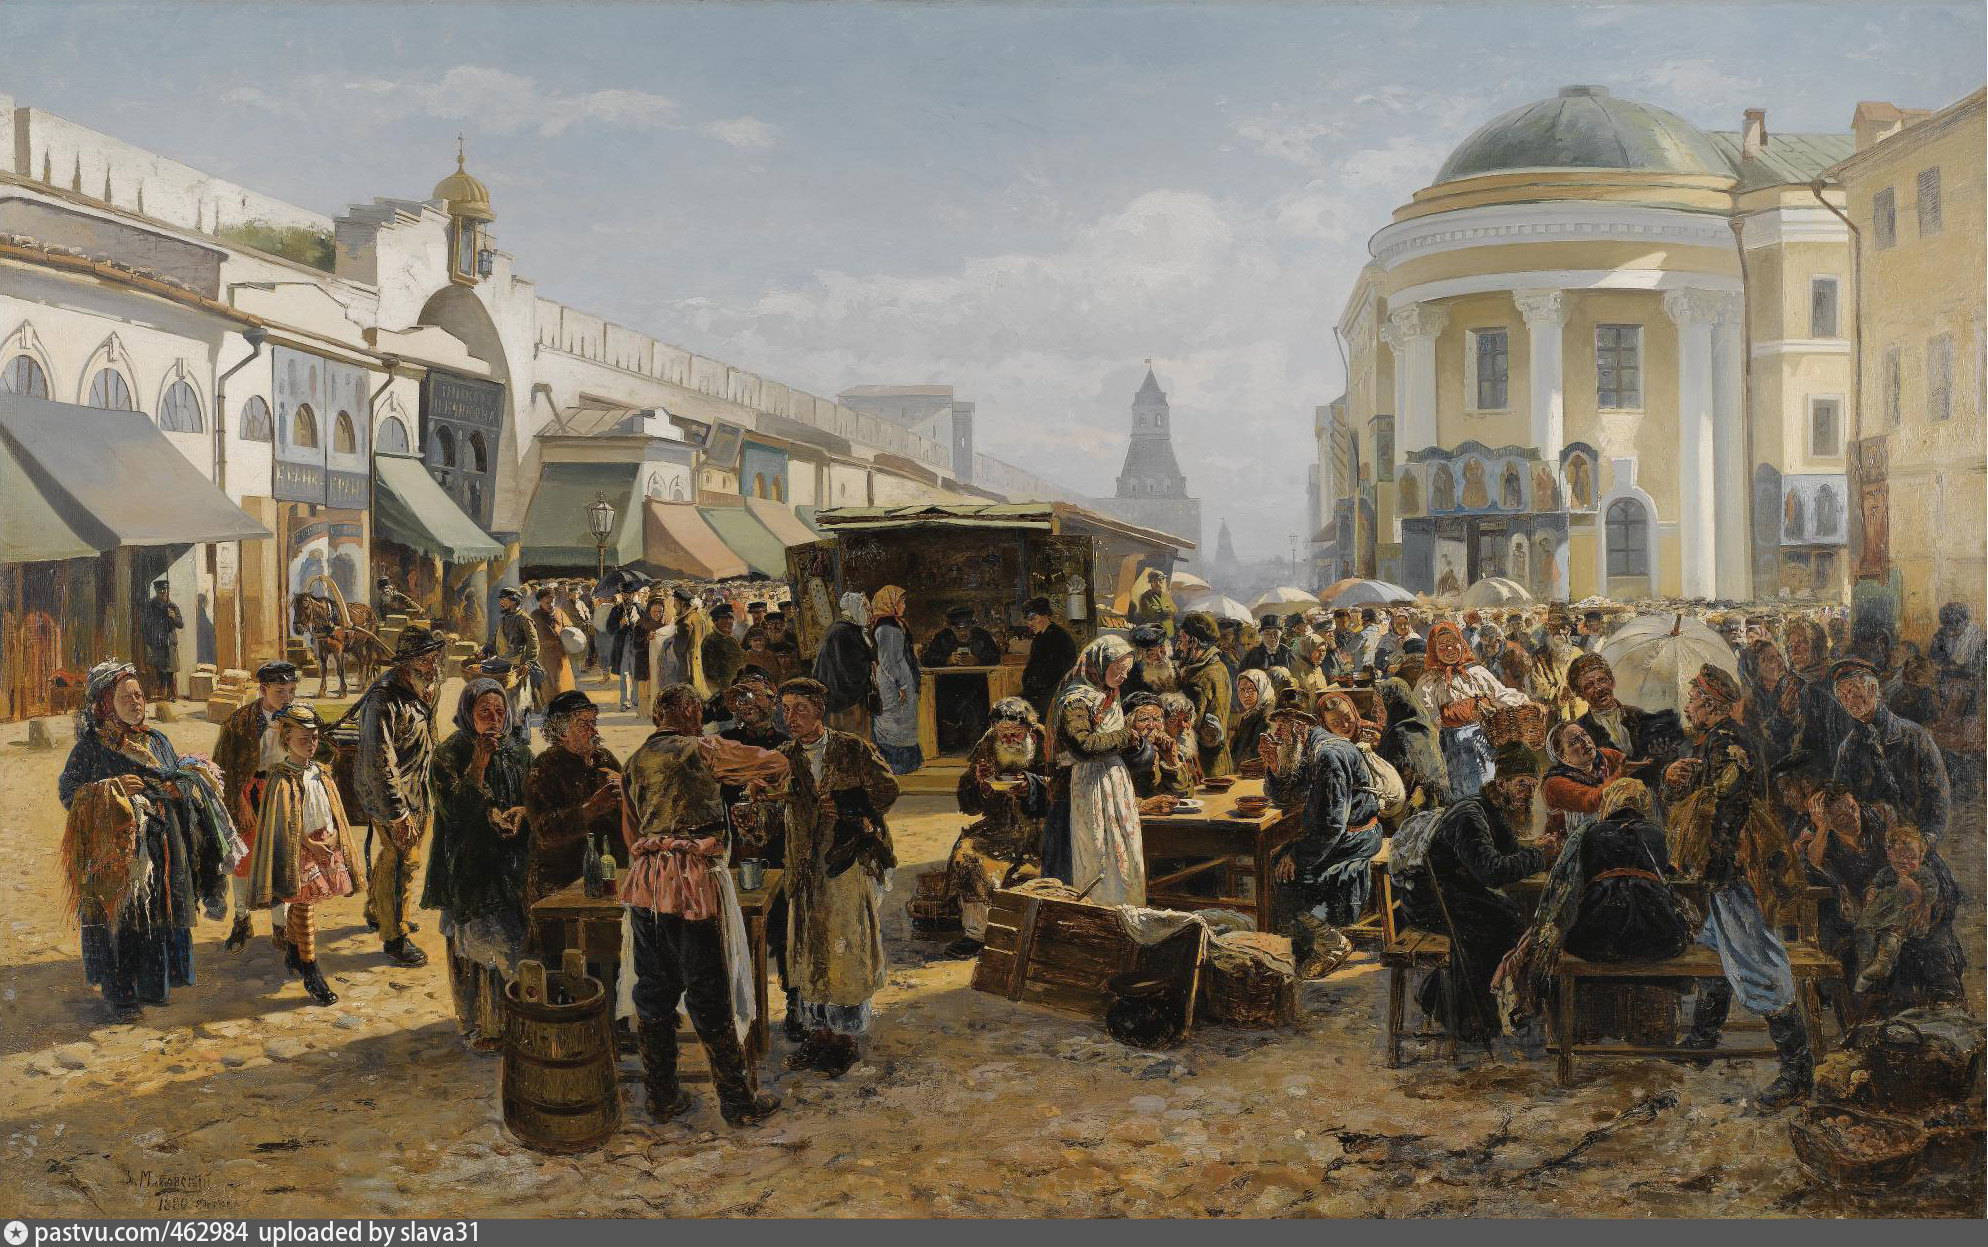 Маковский толкучий рынок в Москве. Маковский «толкучий рынок в Москве», 1879.